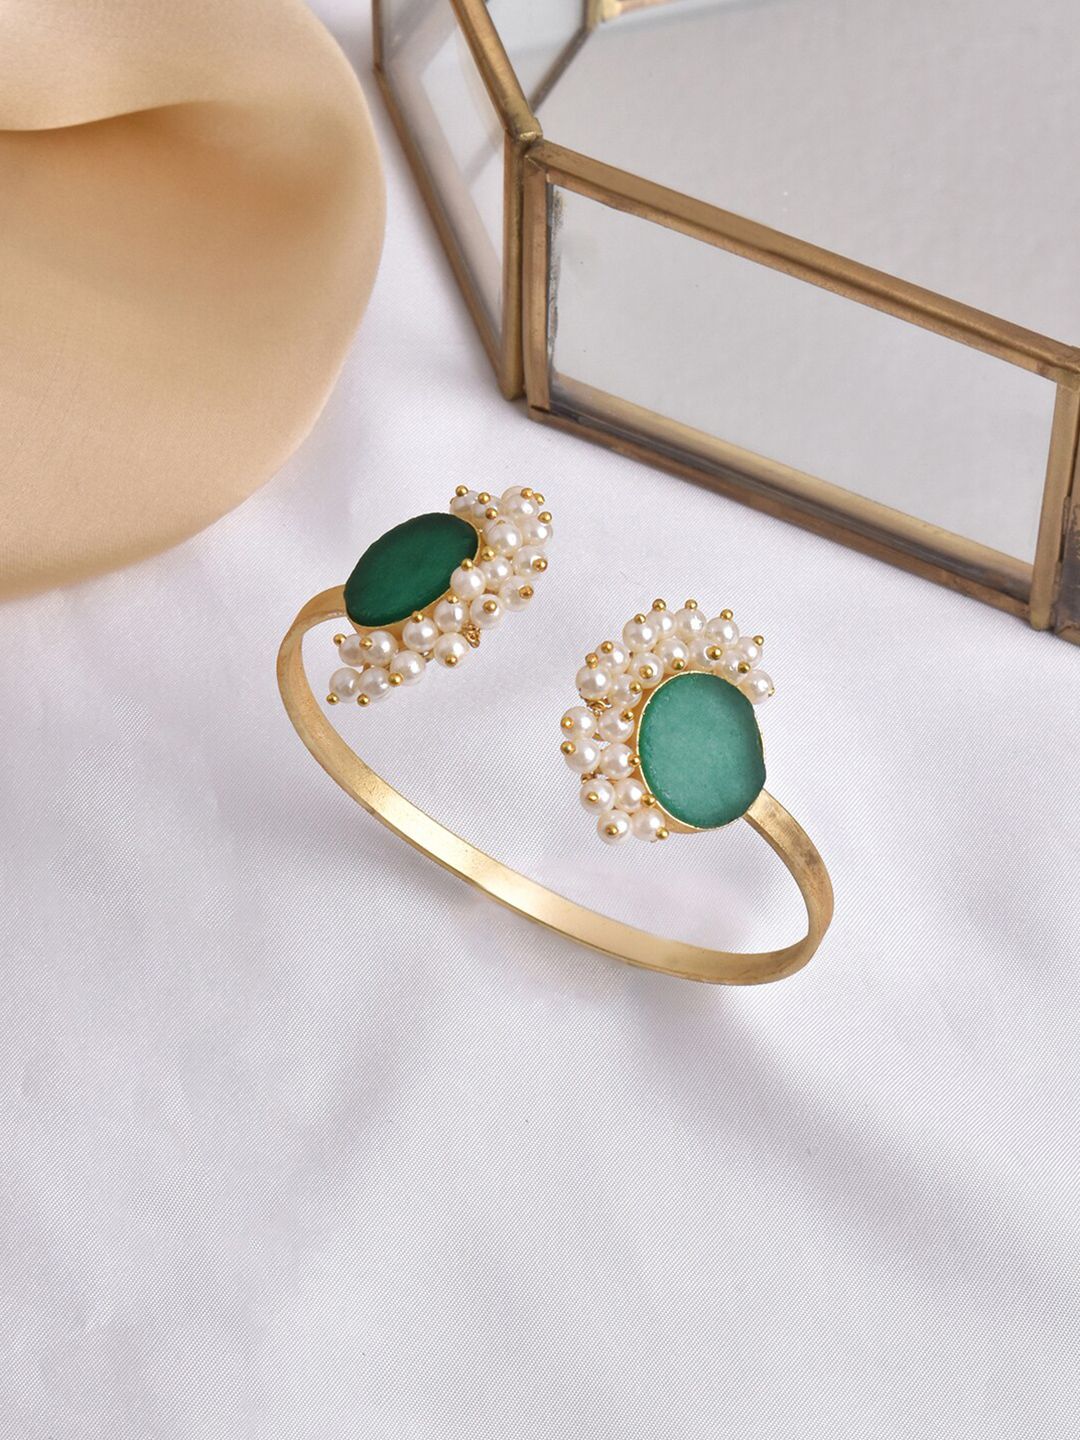 TEEJH Women Gold-Toned & Green Pearl Cuff Bracelet Price in India